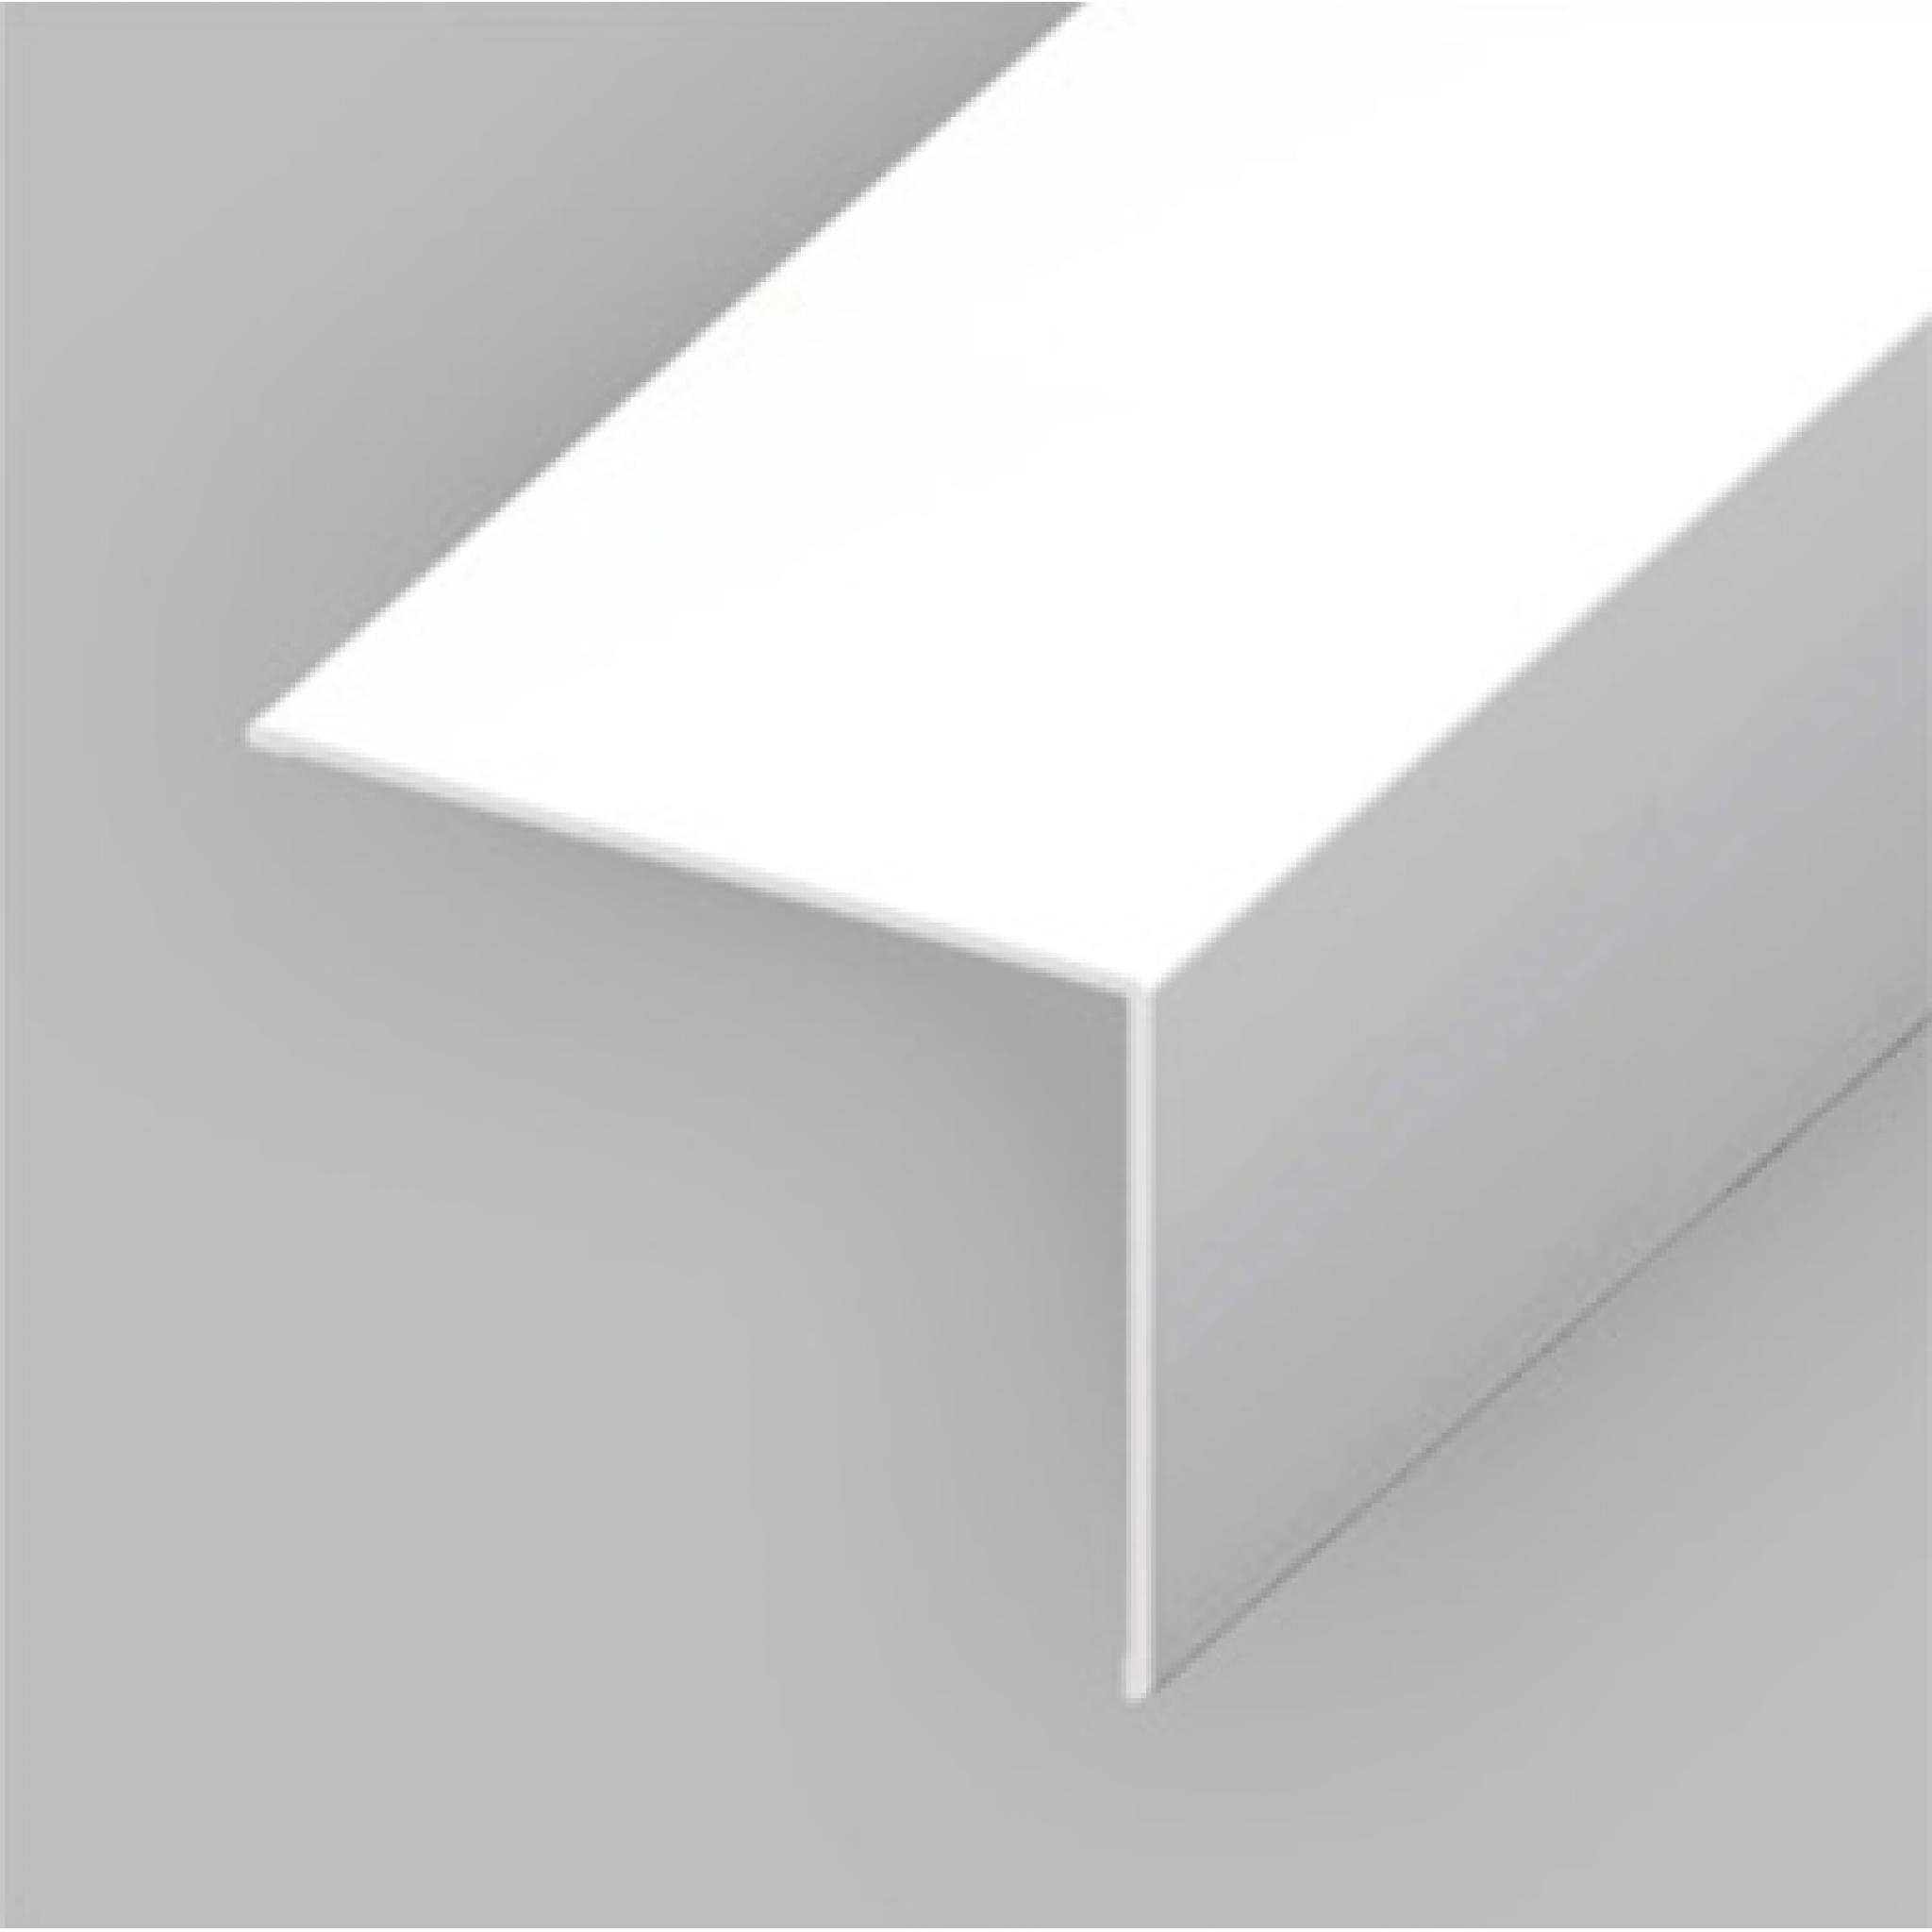 White PVC 60mm x 60mm Rigid Angle